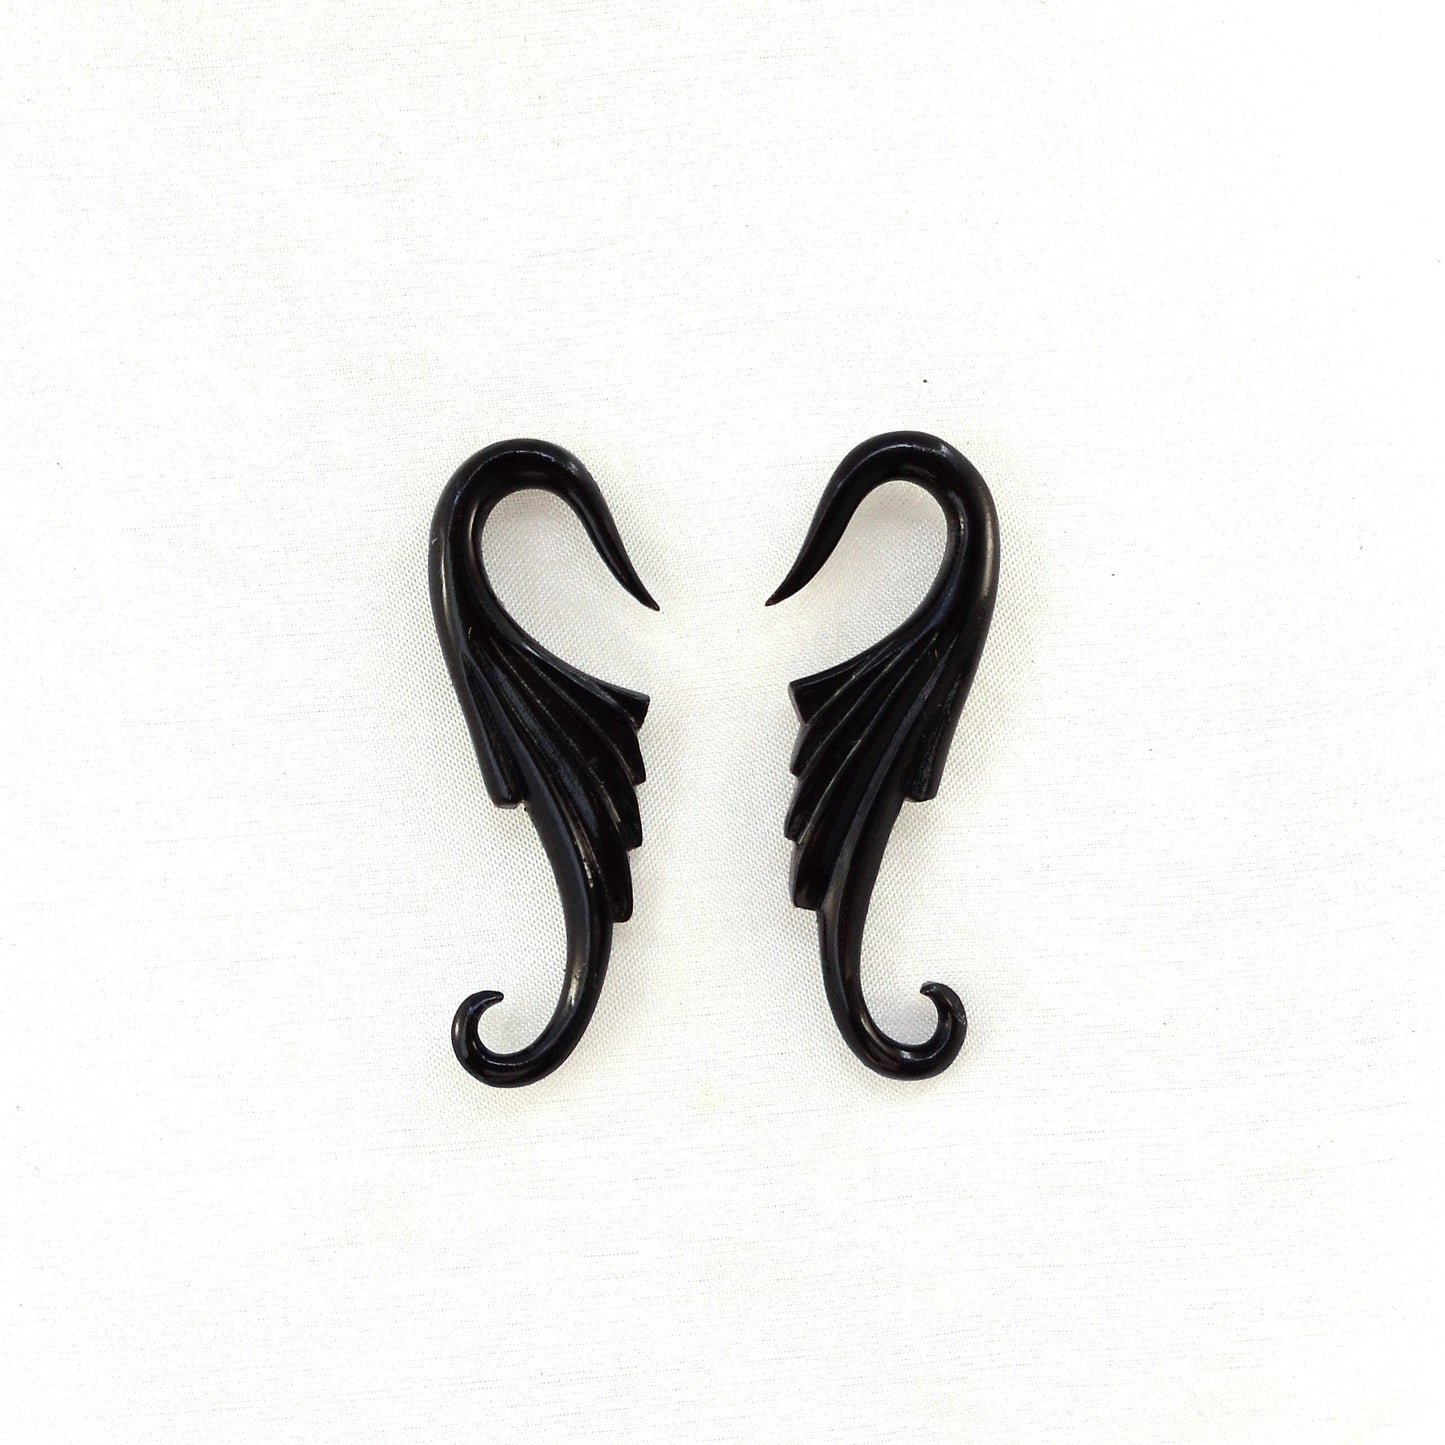 12 gauge earrings, black.